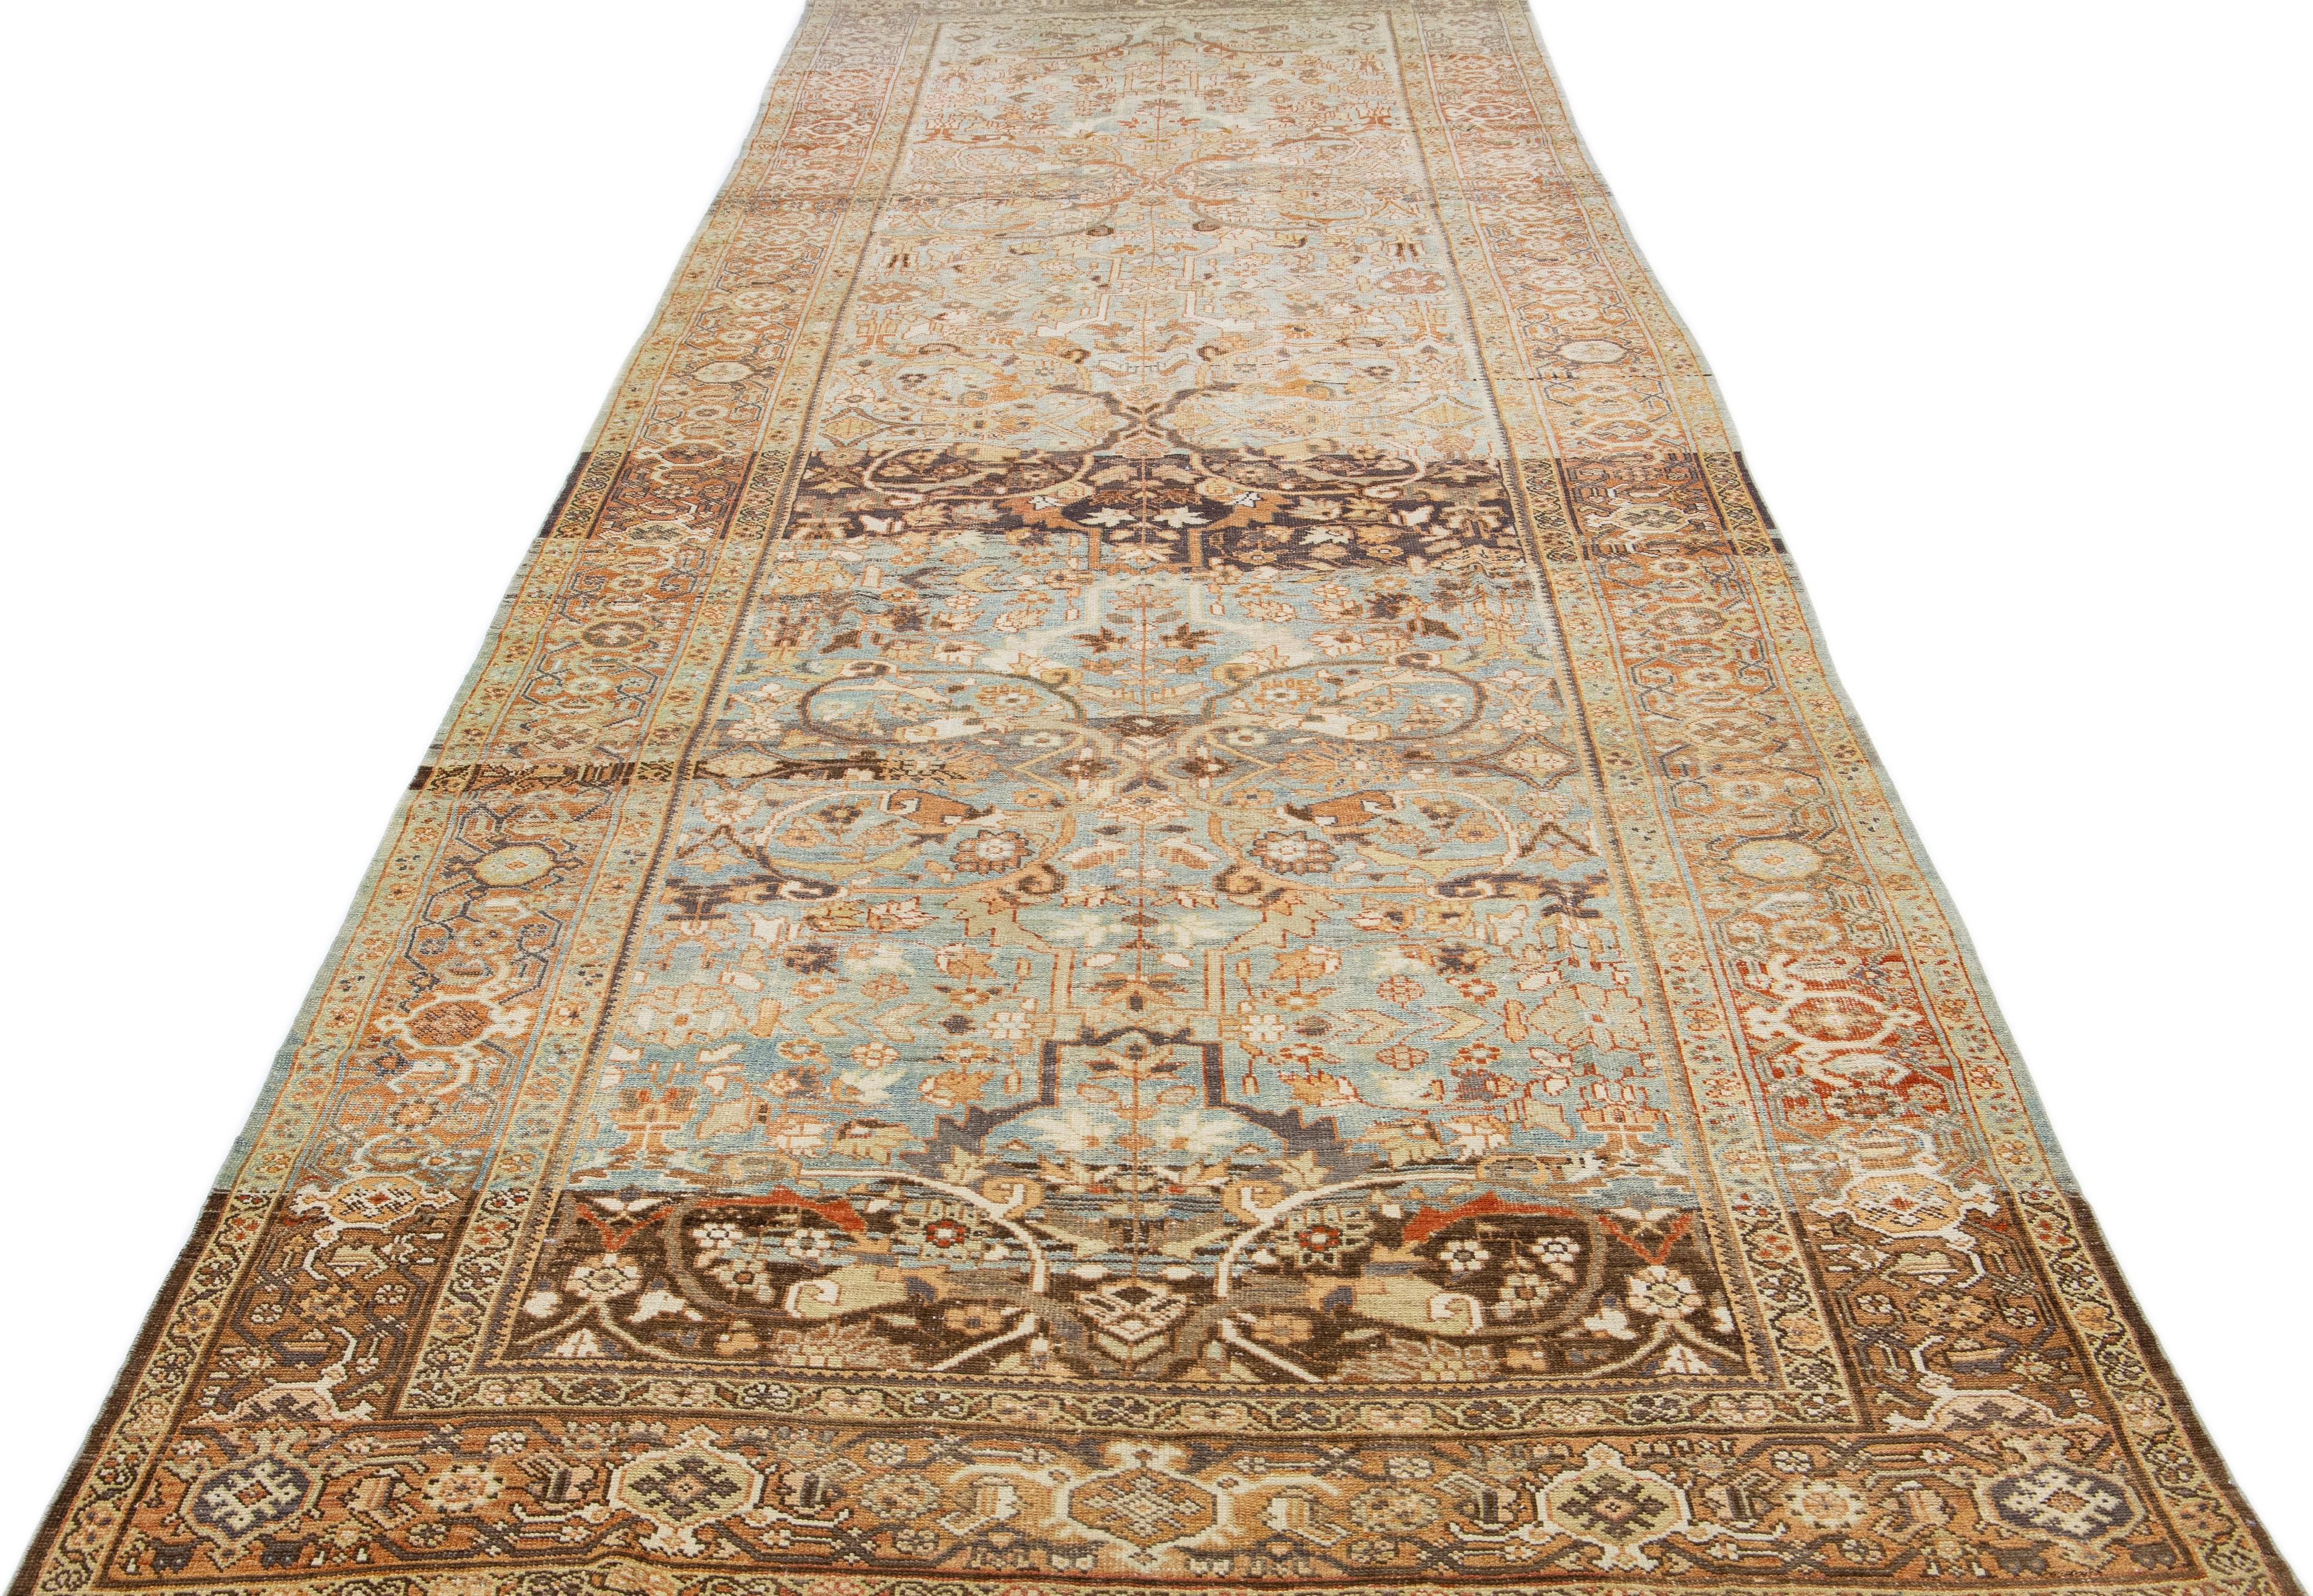 Ce tapis en laine de la galerie Mahal des années 1930 présente un champ principal bleu, rehaussé de rouille, de beige et de marron dans un motif floral, créant ainsi un look classique.

Ce tapis mesure : 6'4